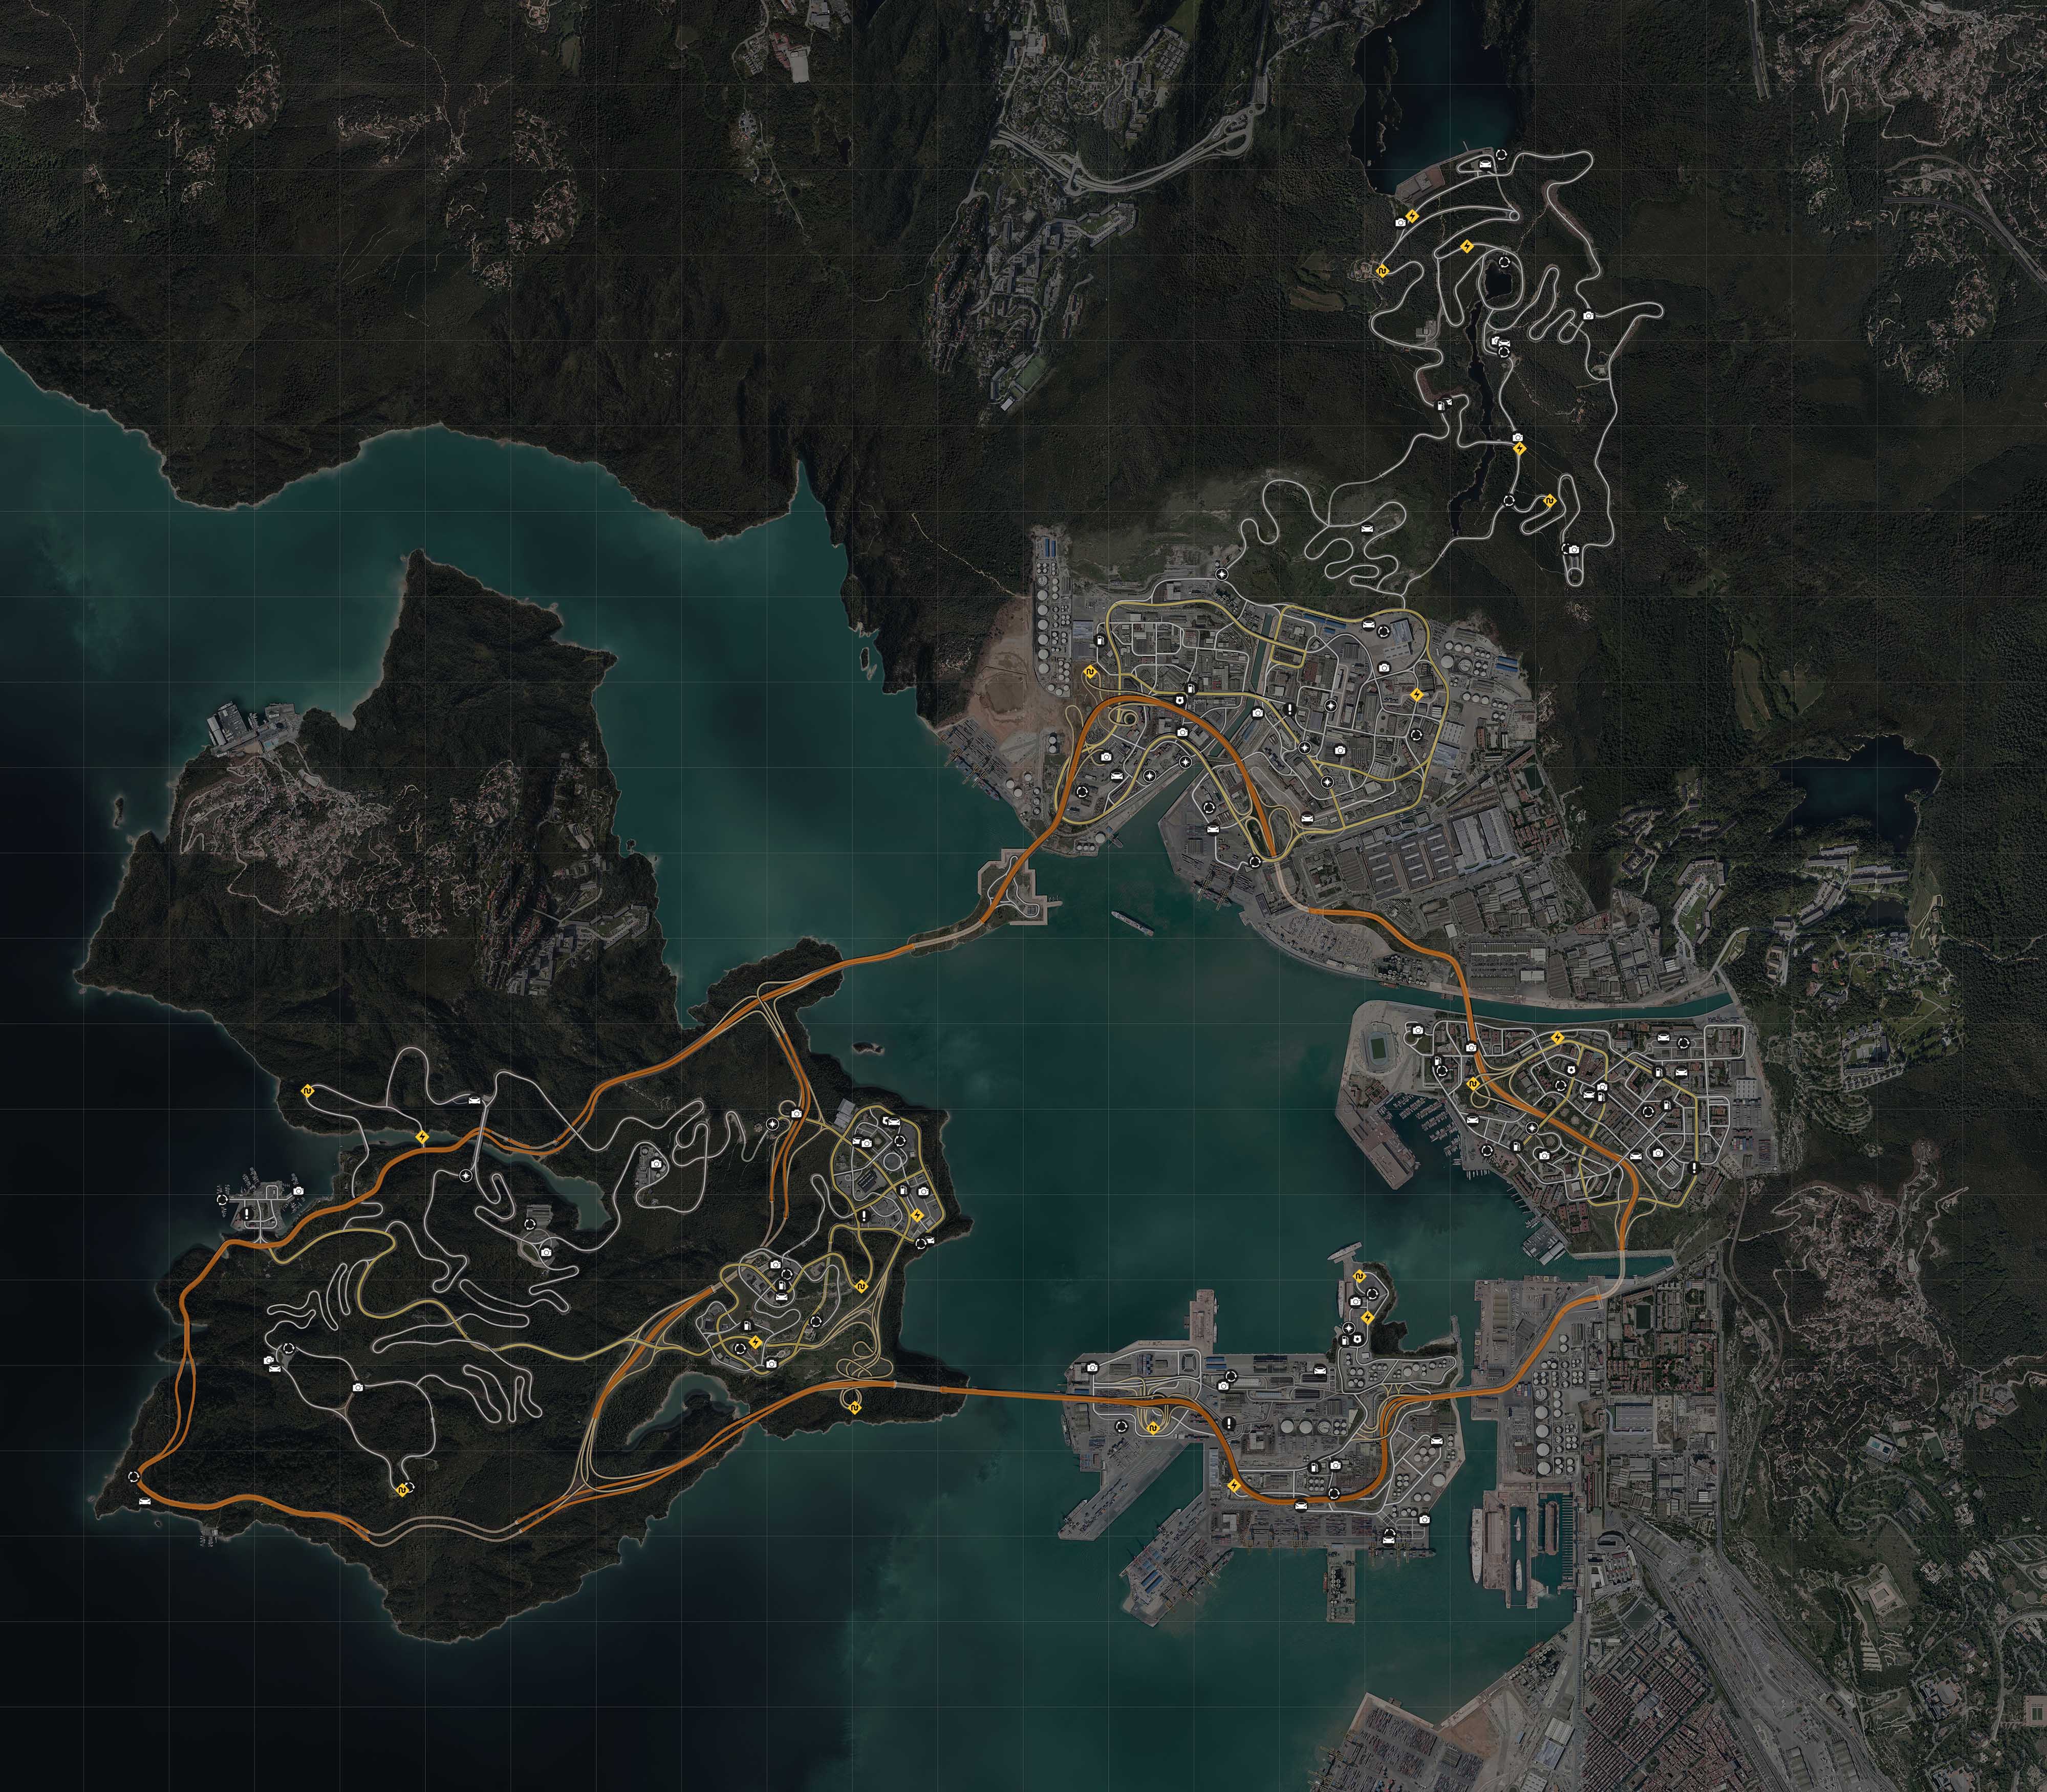 Mapa Ventura Bay - NFS - Need for Speed (2015) - Collectibles Urbex Spots, Donut Spots, Vista Spots, Free Parts, Speed Runs, Drift Corners - punkty eksploracyjne, miejsca do kręcenia bączków, punkty widokowe, darmowe części, gonitwy, zakręty driftowe